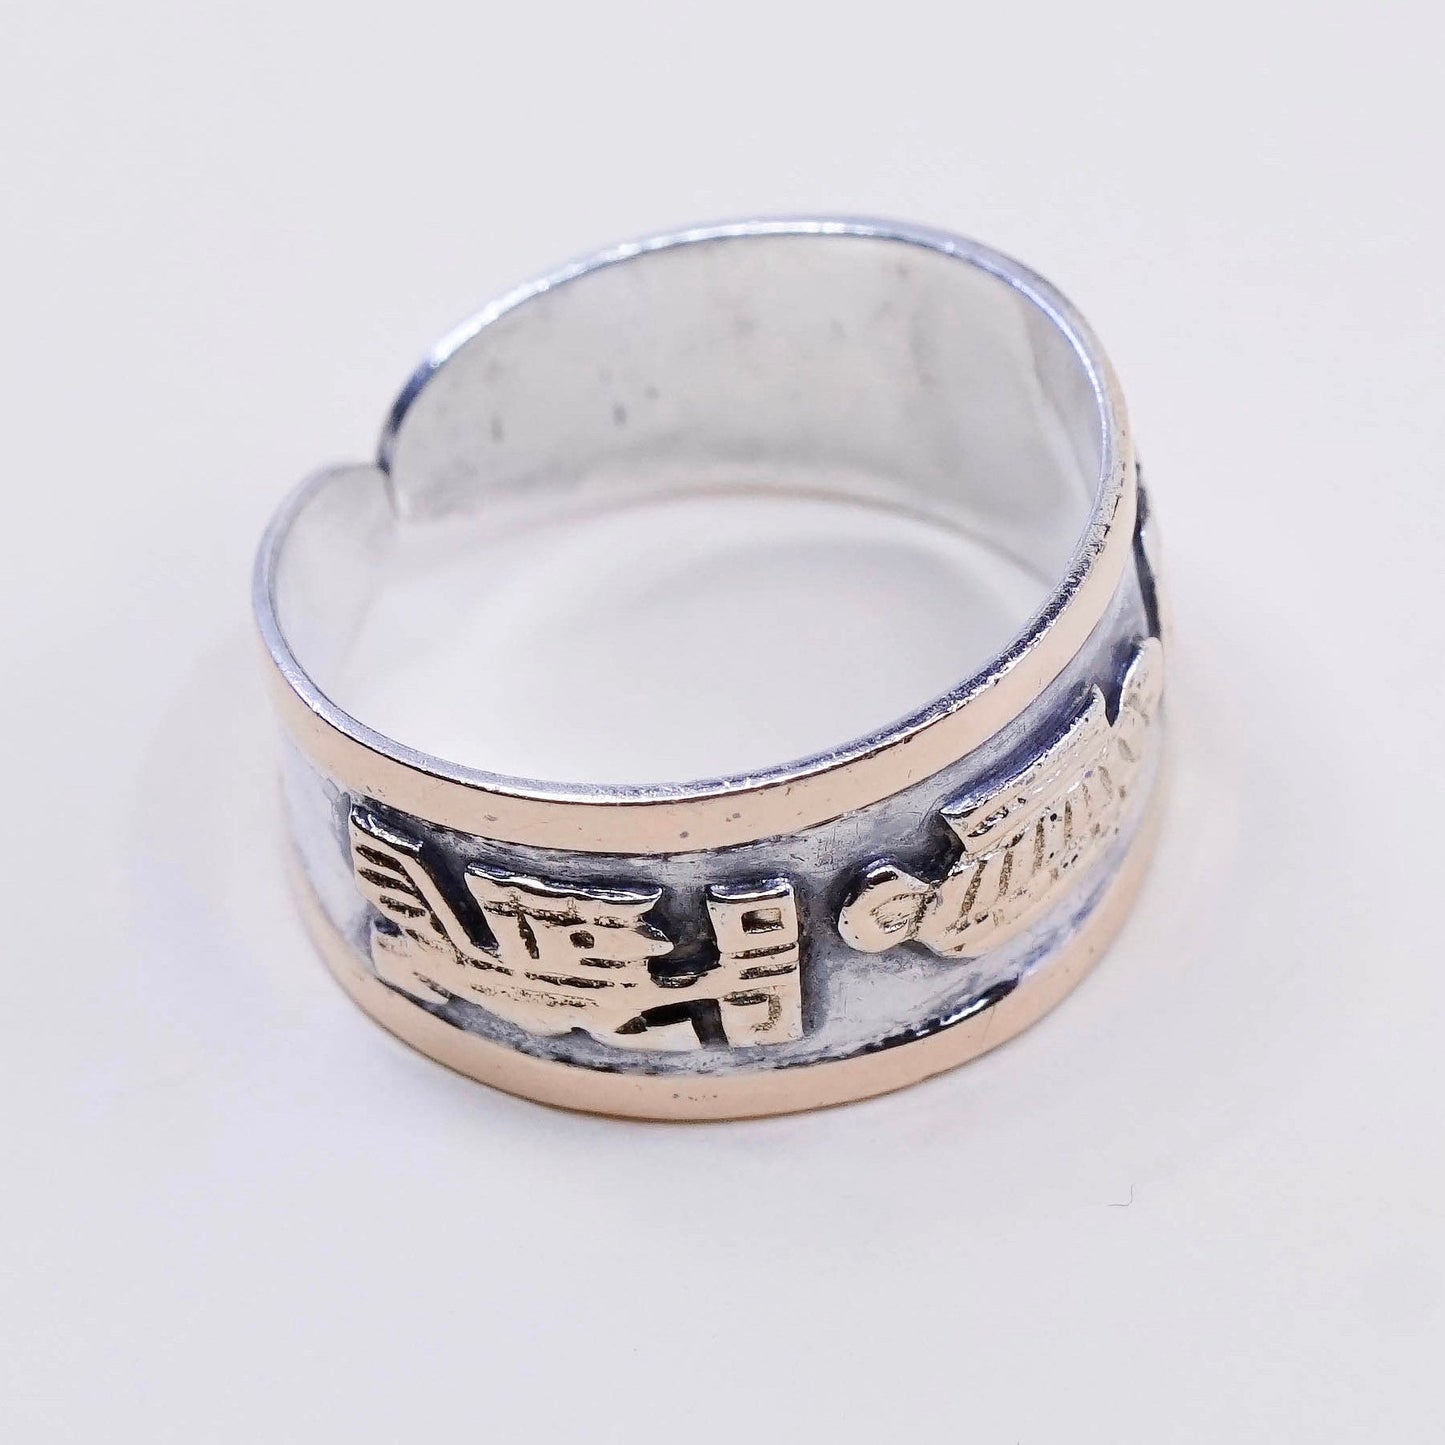 sz 7.75, vtg mexico 14K w/ sterling 925 silver handmade storyteller ring band